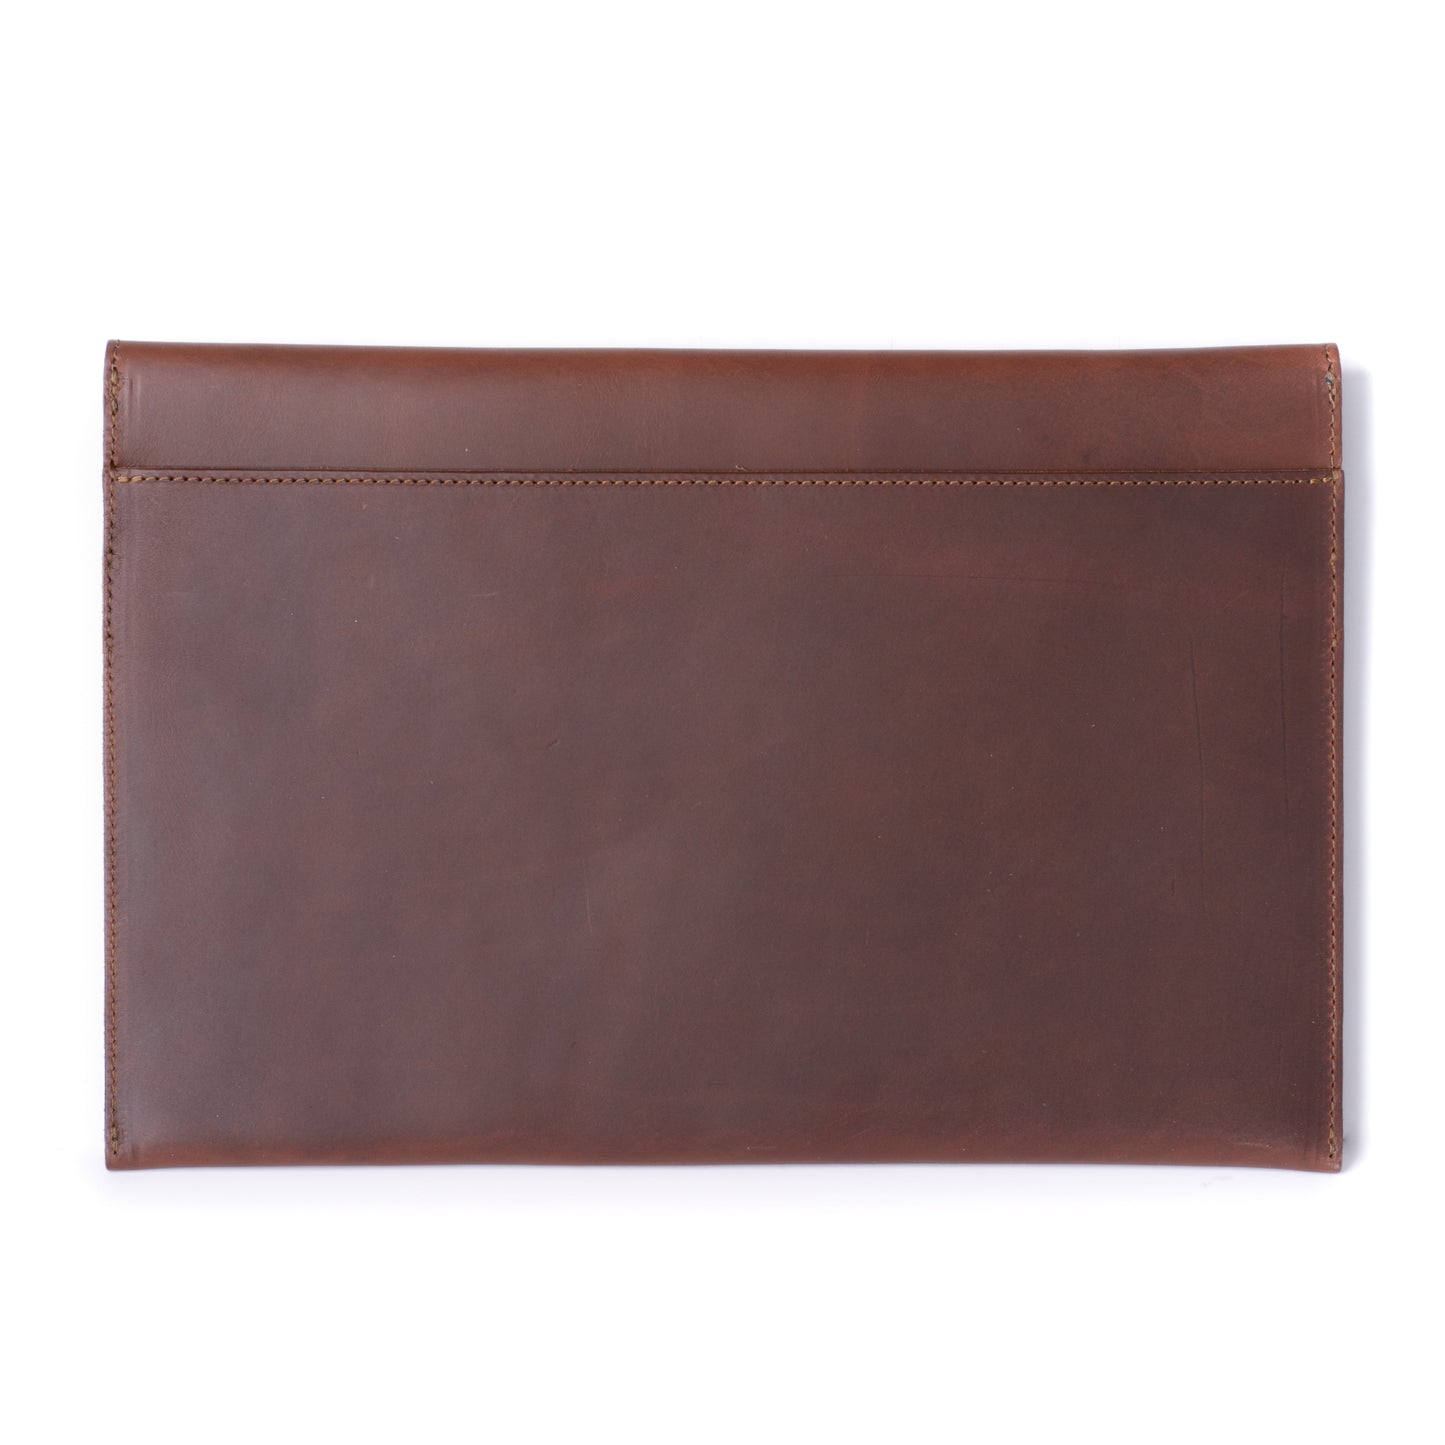 Leather iPad Pro Envelope Case - Chestnut